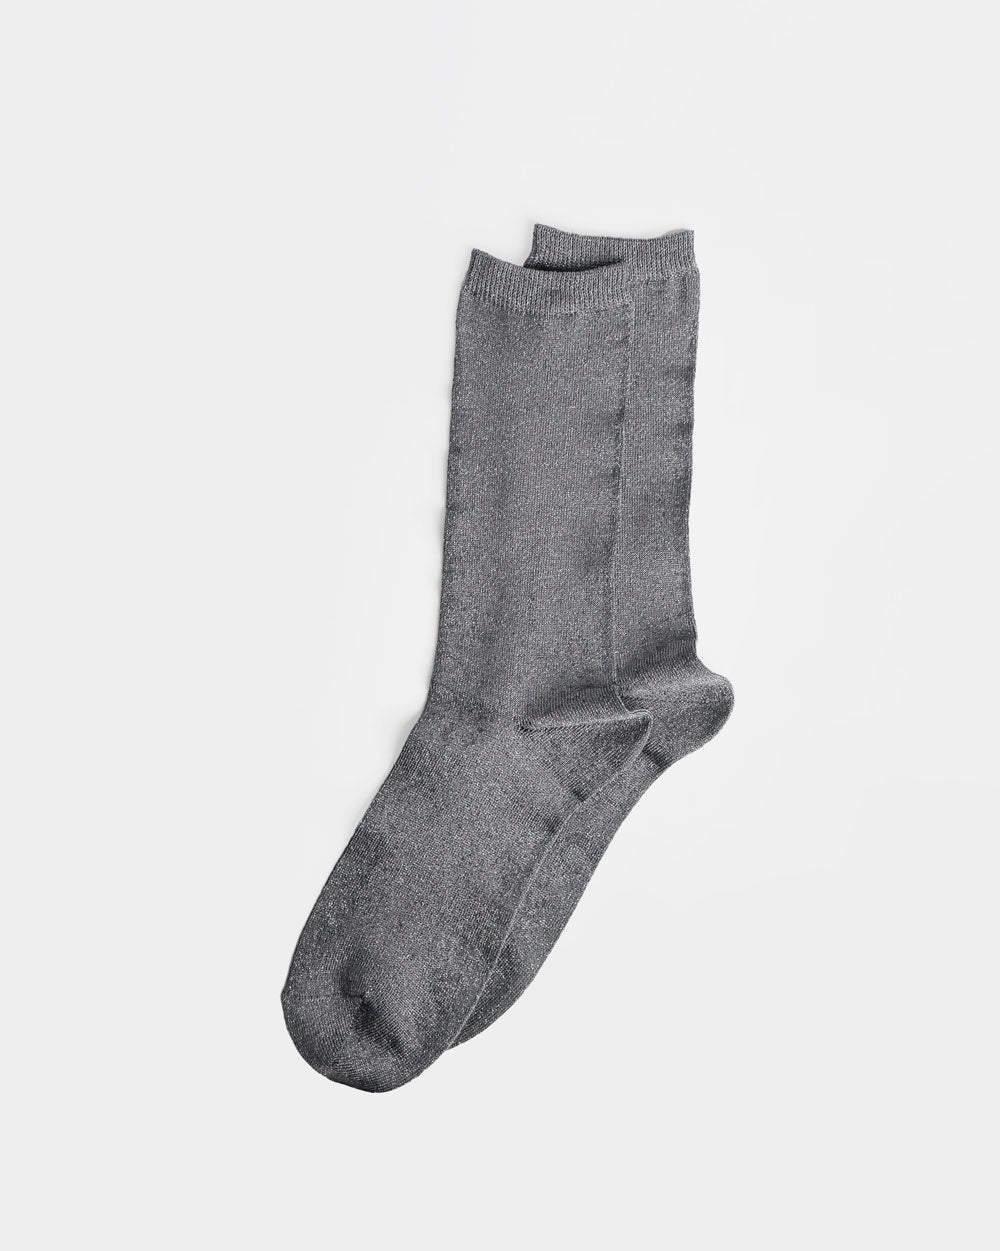 Glitter Socks / Gray x Silver